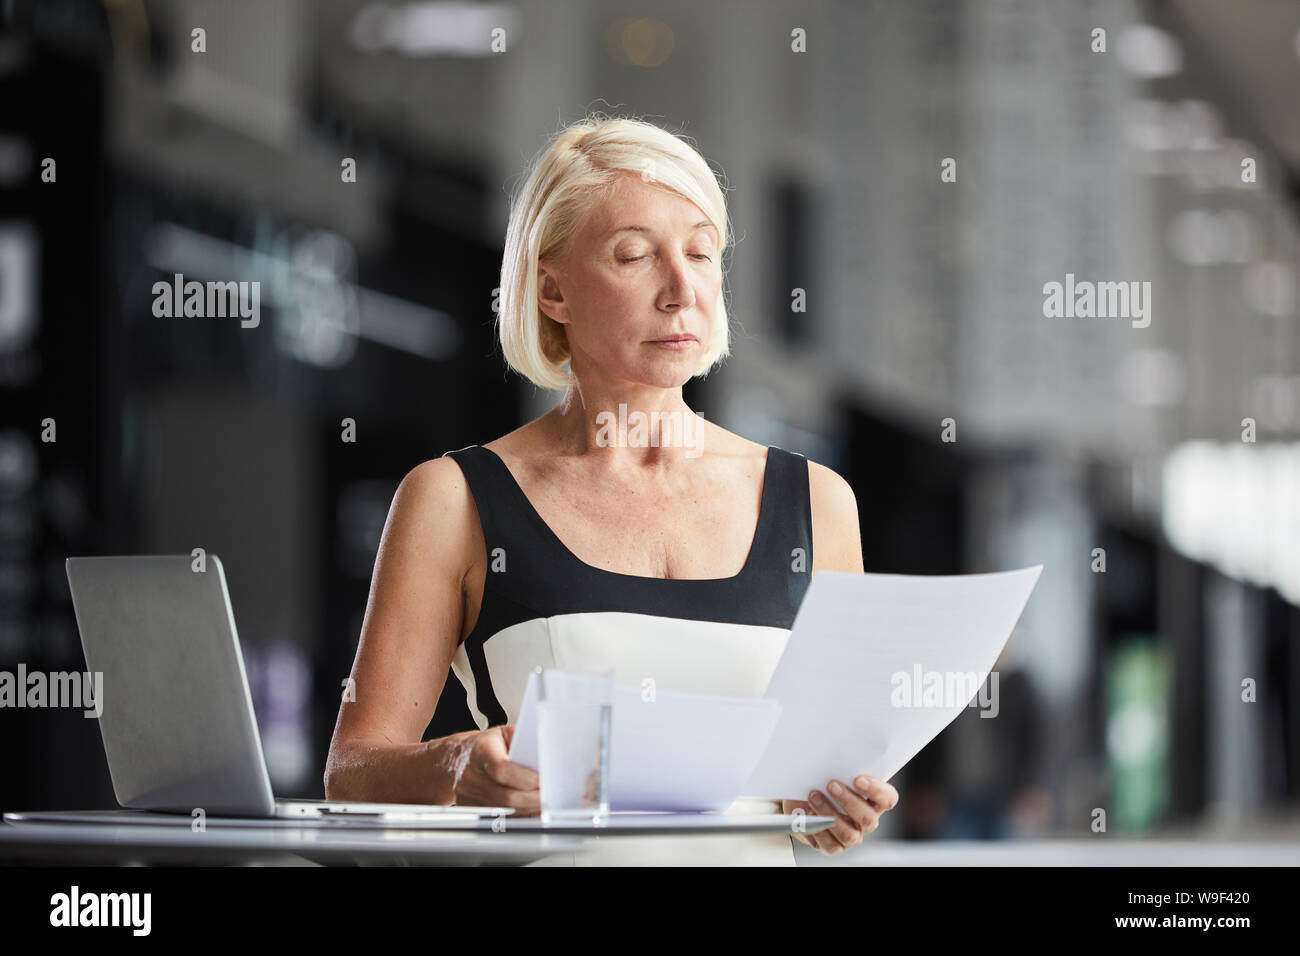 Femme sérieuse avec de courts cheveux blonds assis à la table en face de l'ordinateur portable et de la lecture du contrat d'entreprise Banque D'Images